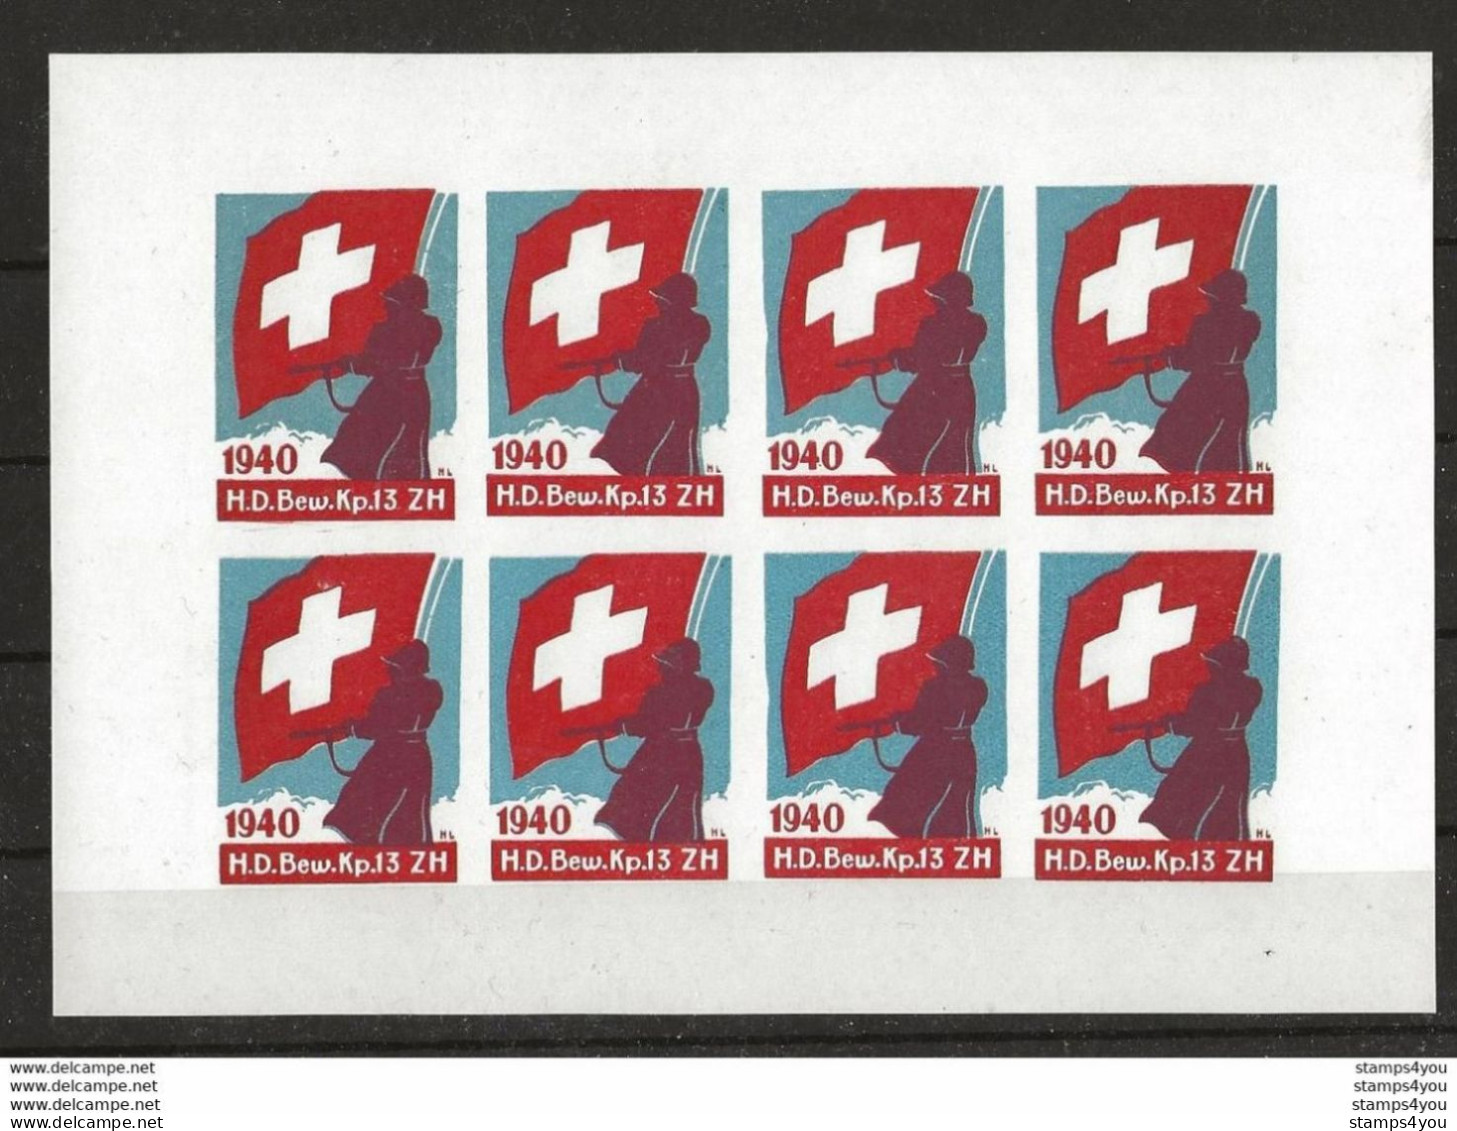 406 - 39 -  Feuillet Timbres Non-dentelés     "H.D. Bew. Kp.13. ZH  1940" - Vignetten